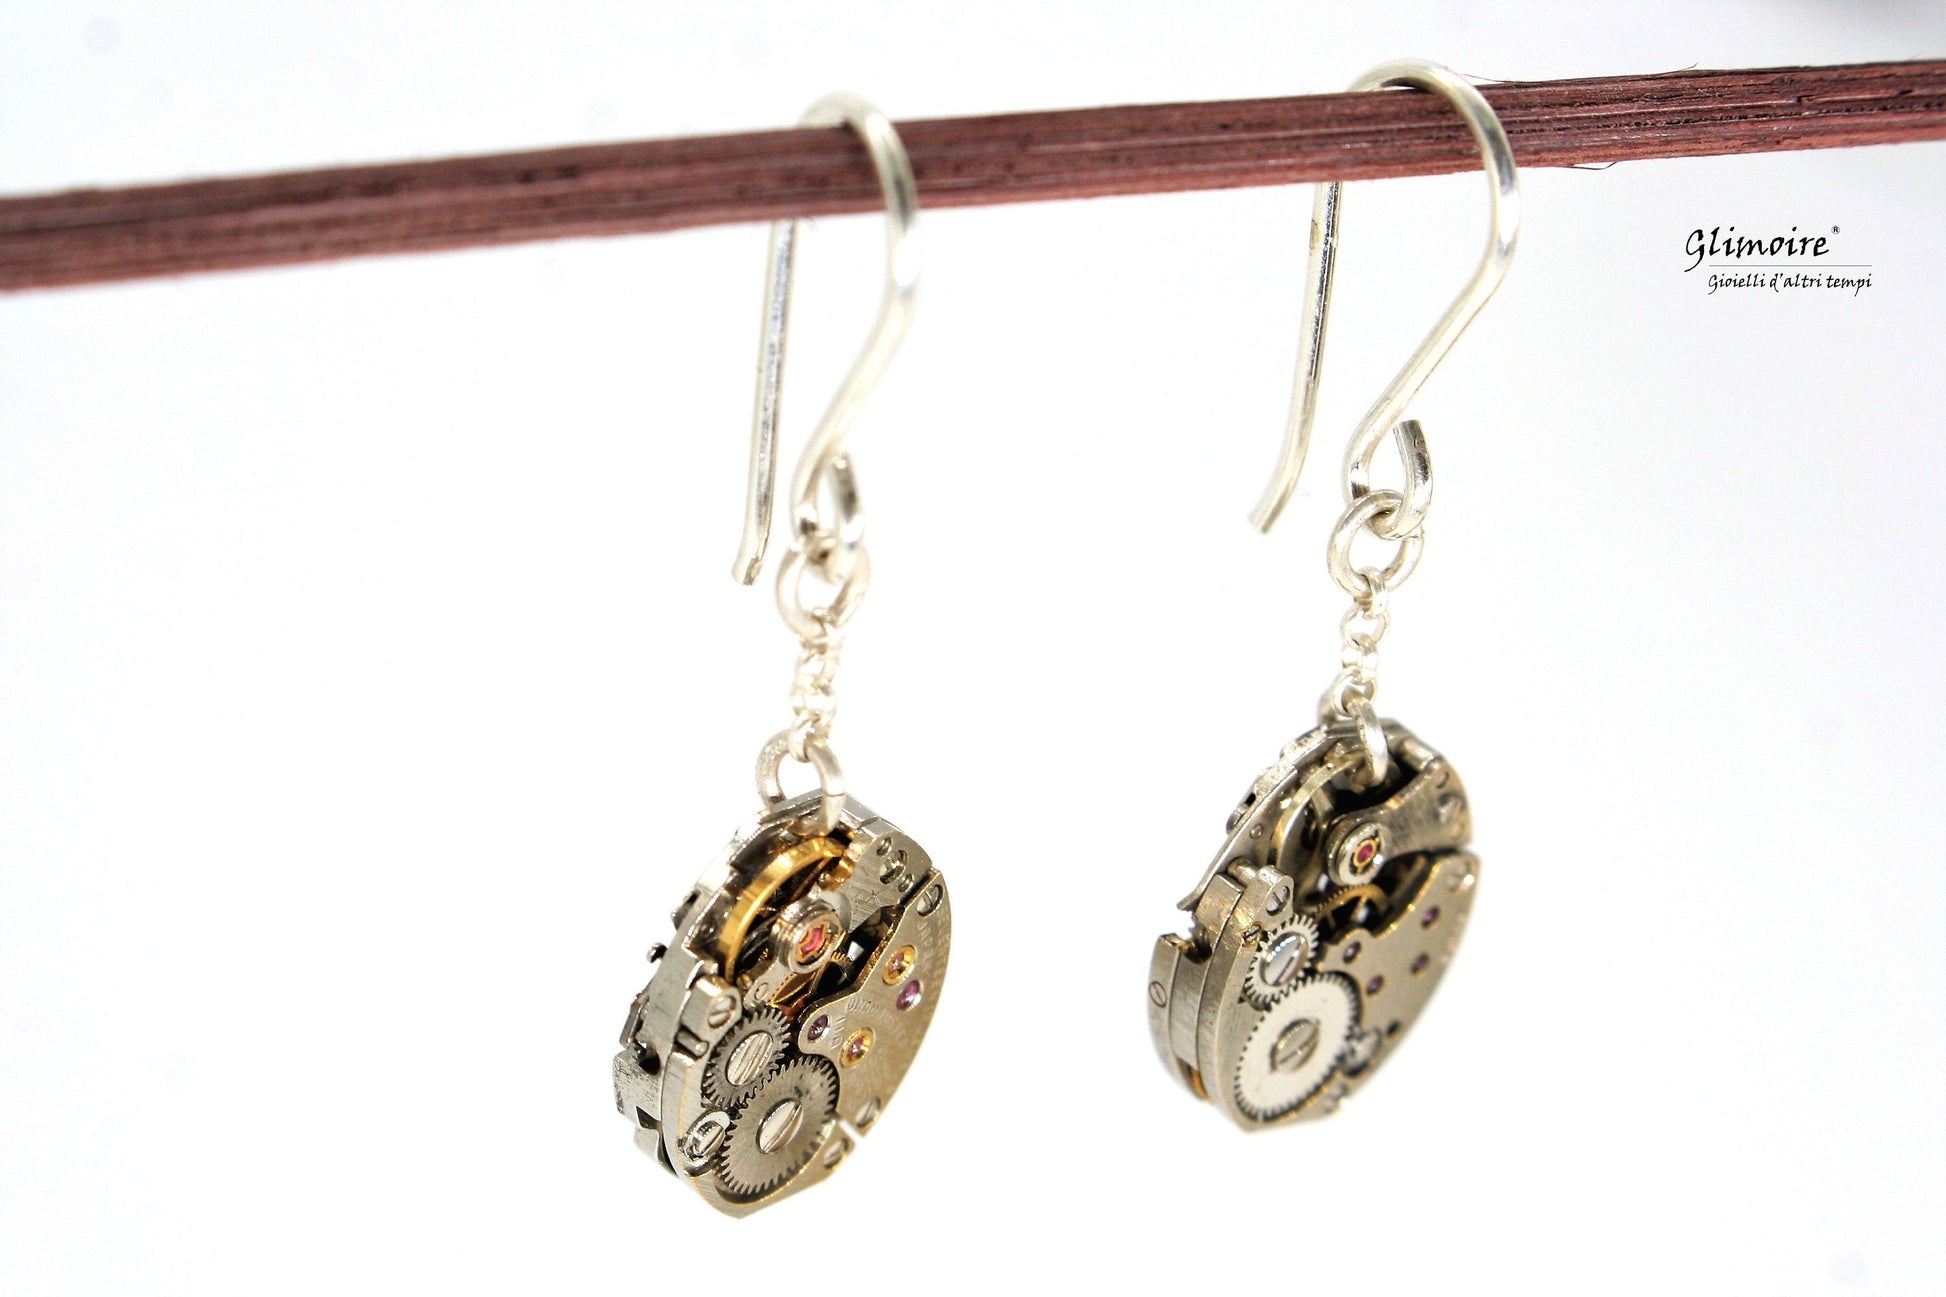 Coppia di orecchini pendenti in argento con meccanismi di orologi seiko con rubini a vista art.227 - Glimoire